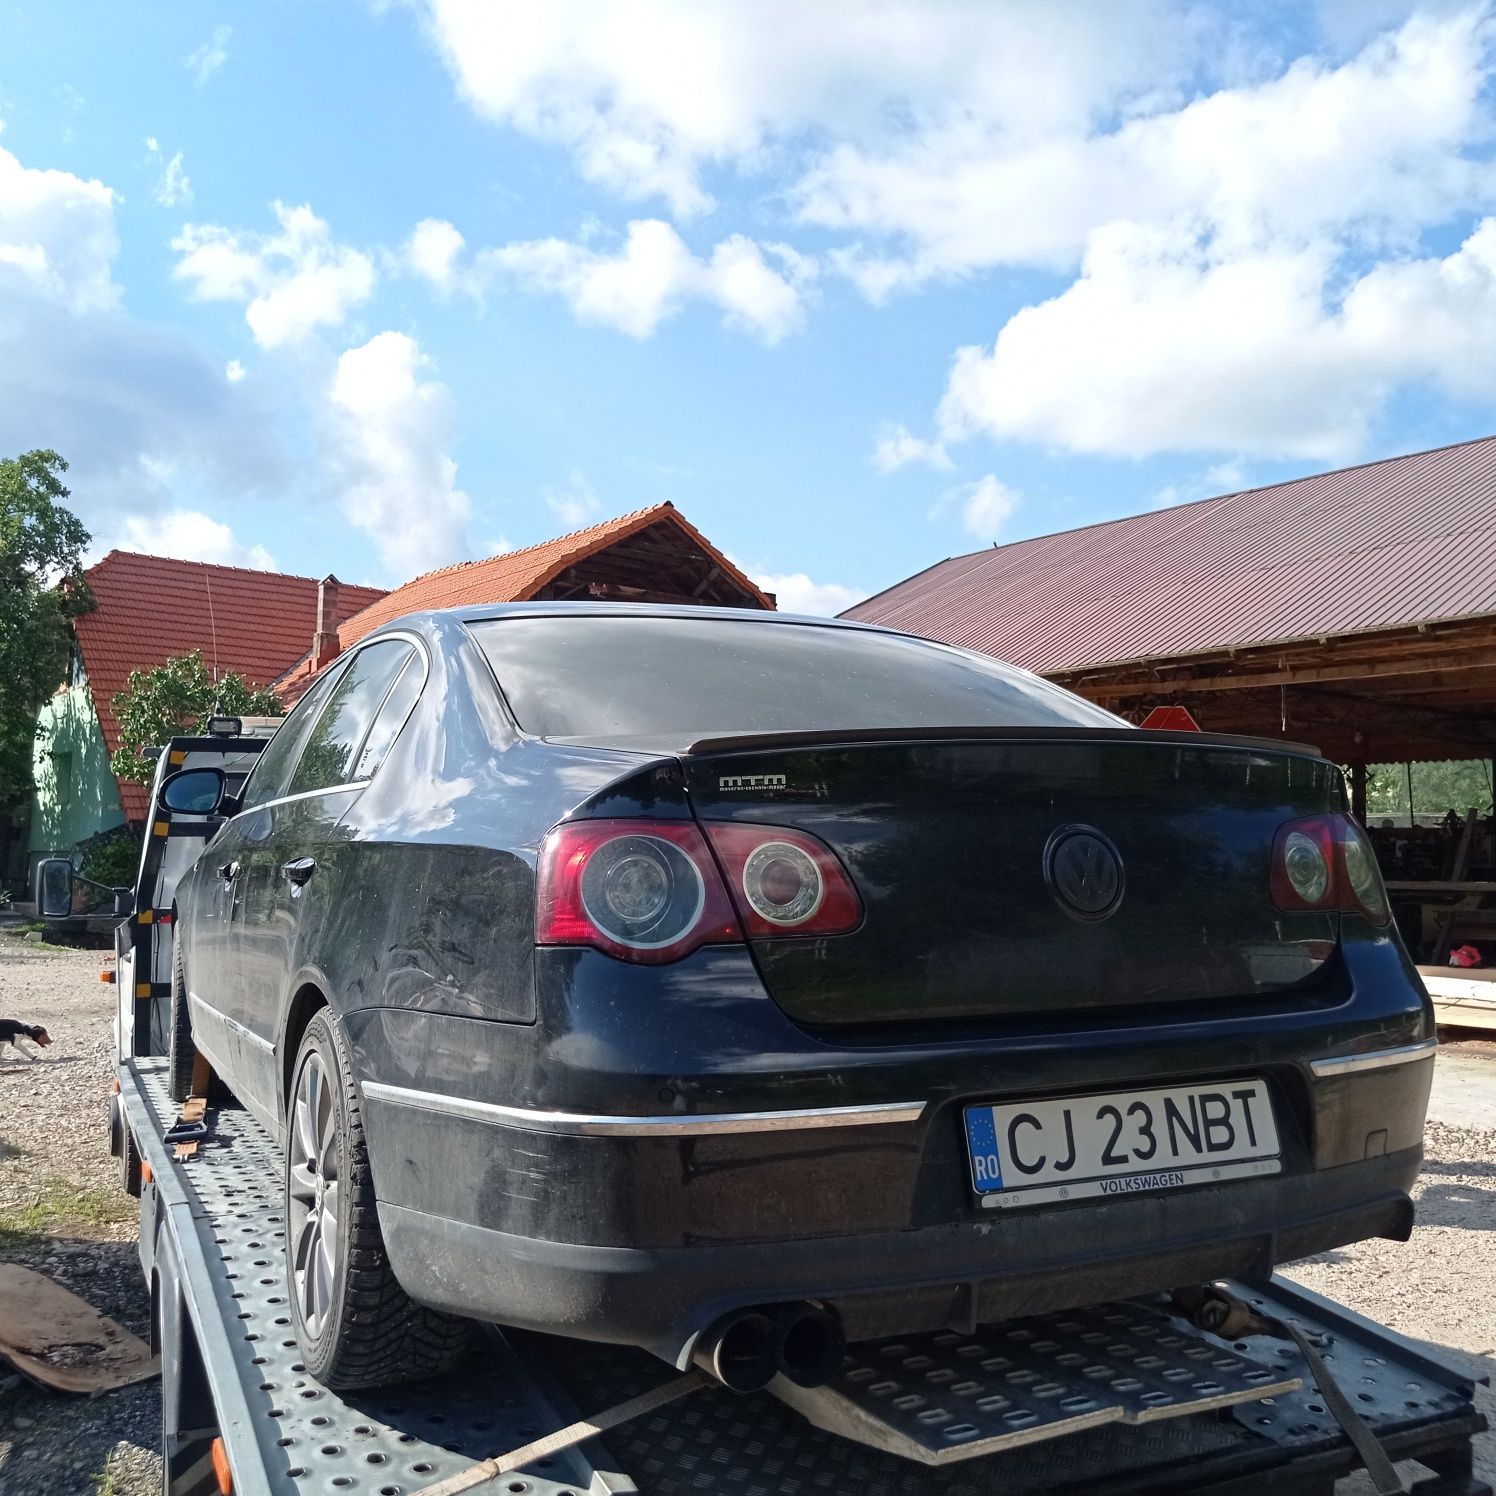 Tractari Auto Nou Stop Cluj Florești A3 A10 Huedin Și În Toată Țara